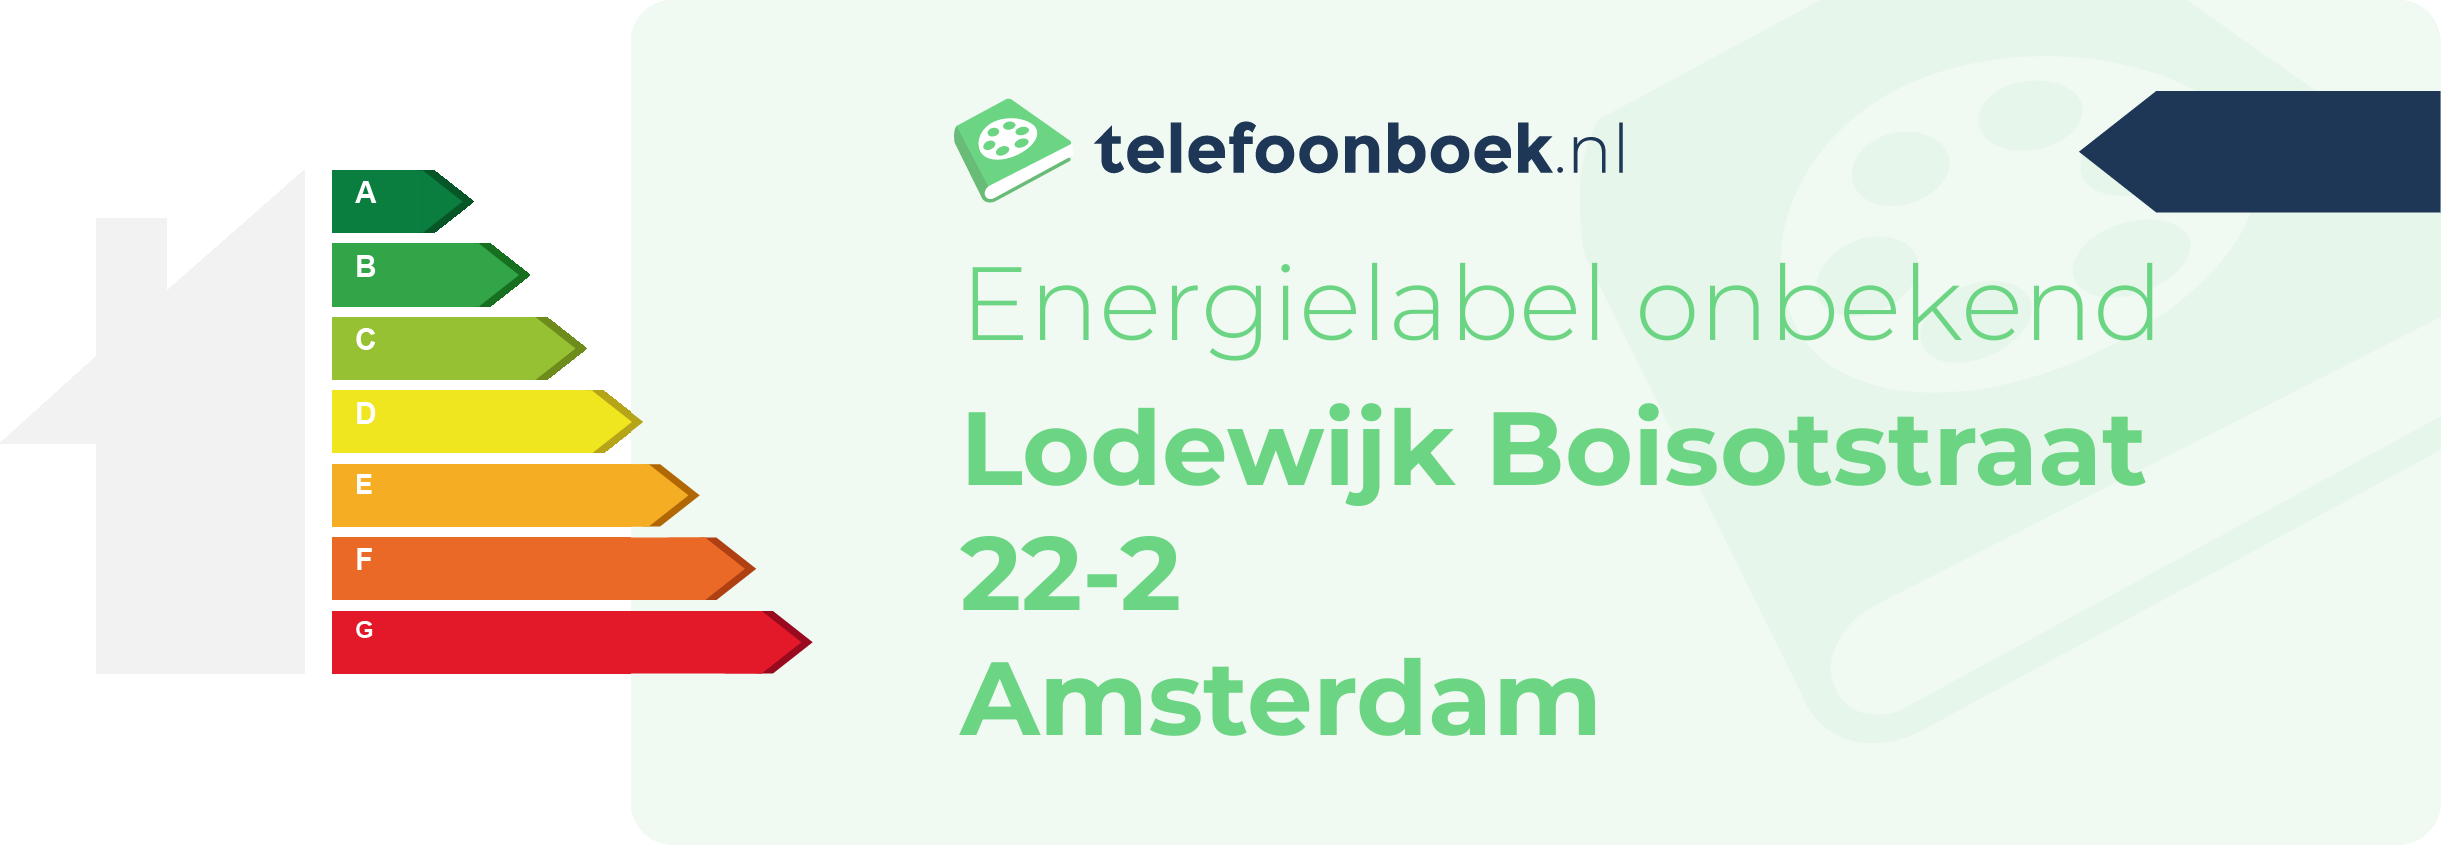 Energielabel Lodewijk Boisotstraat 22-2 Amsterdam